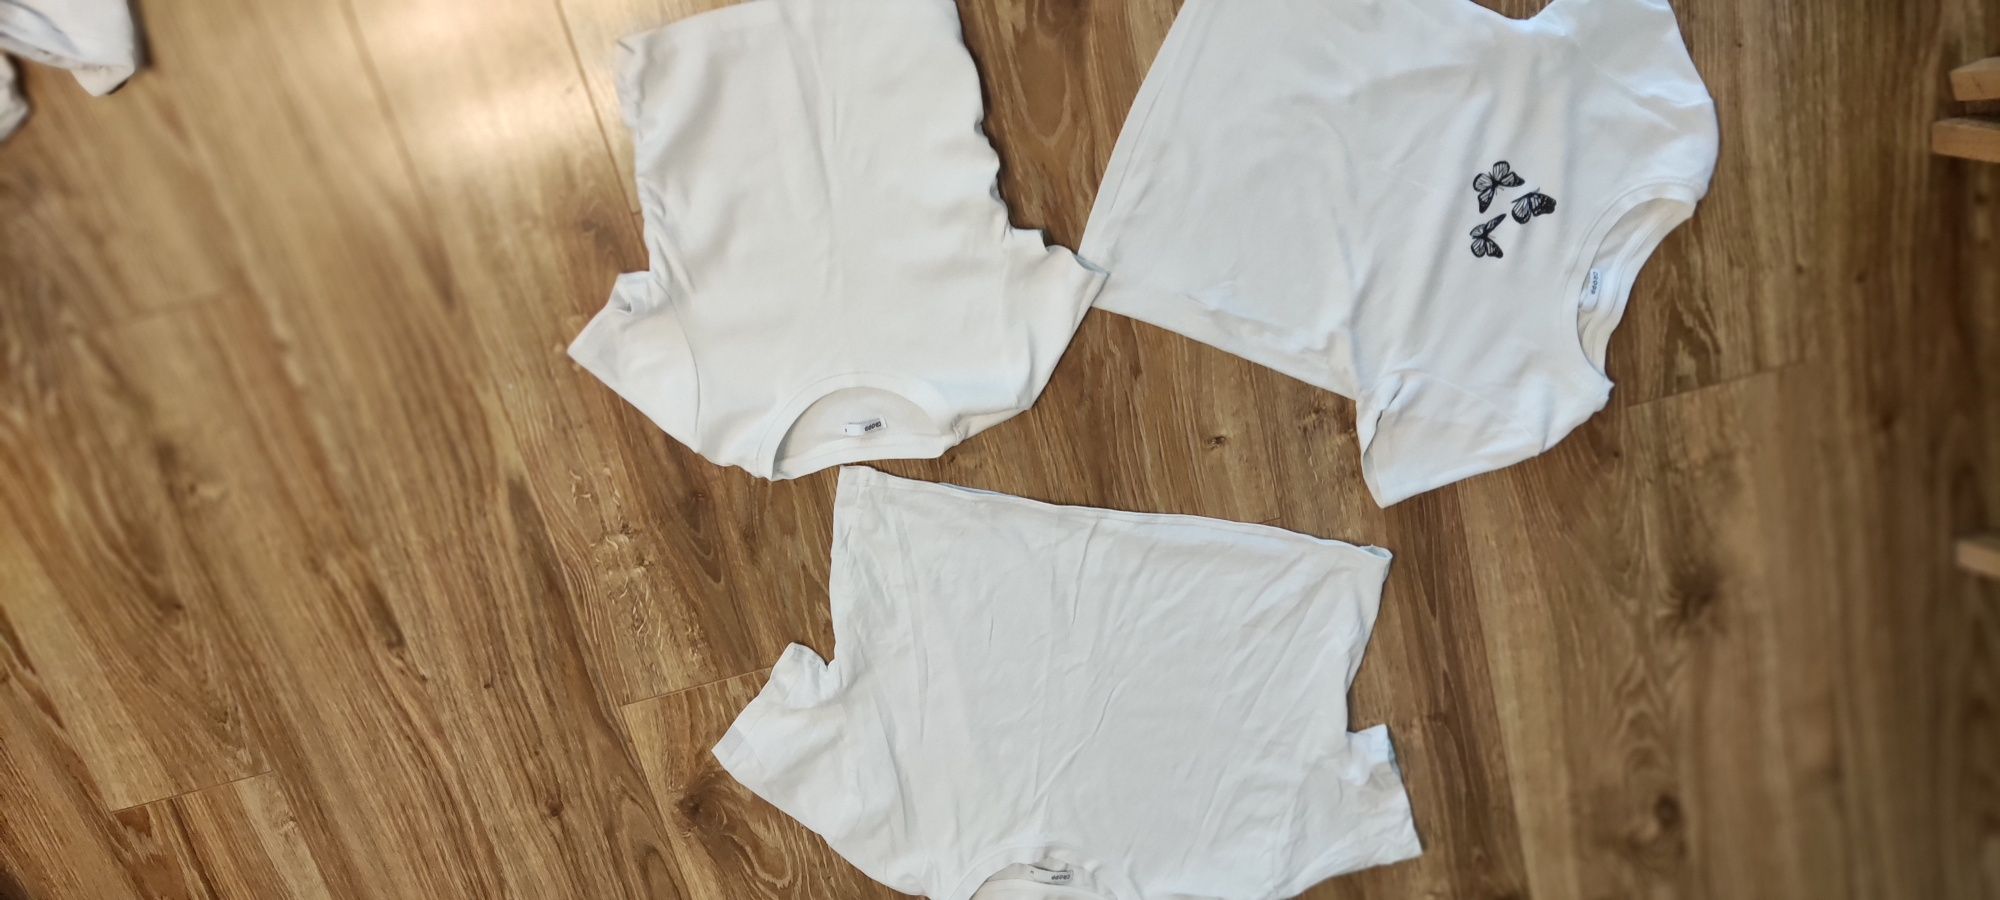 Zestaw 7 szt białych koszulek dziewczęcych.